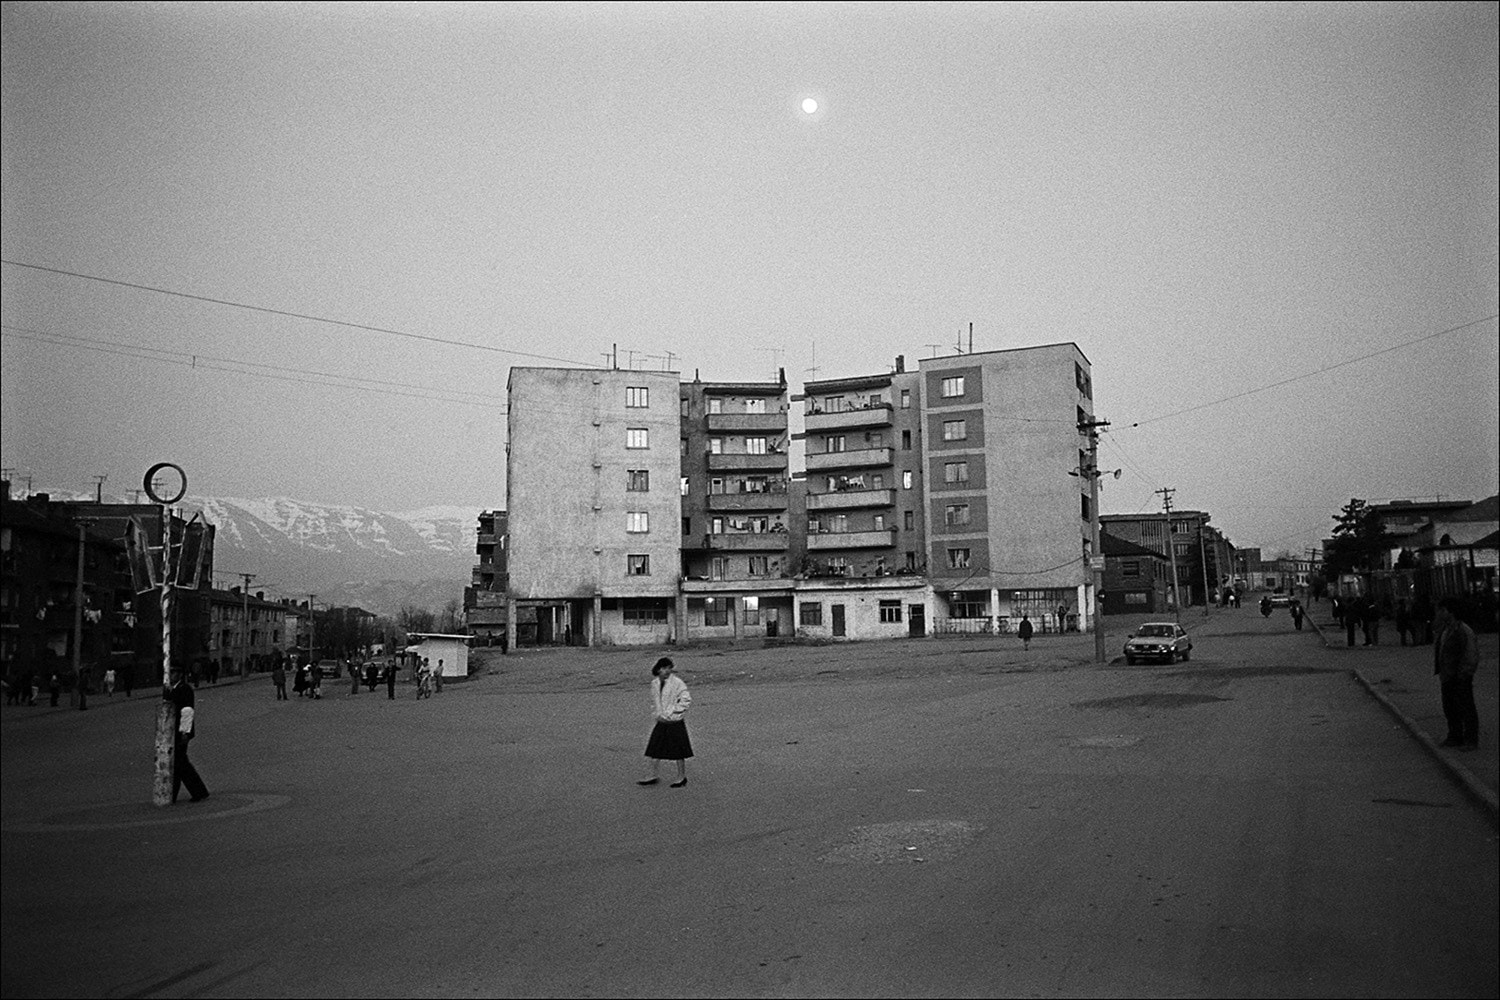 Klavdij Sluban, Albanija / Albania, 1993